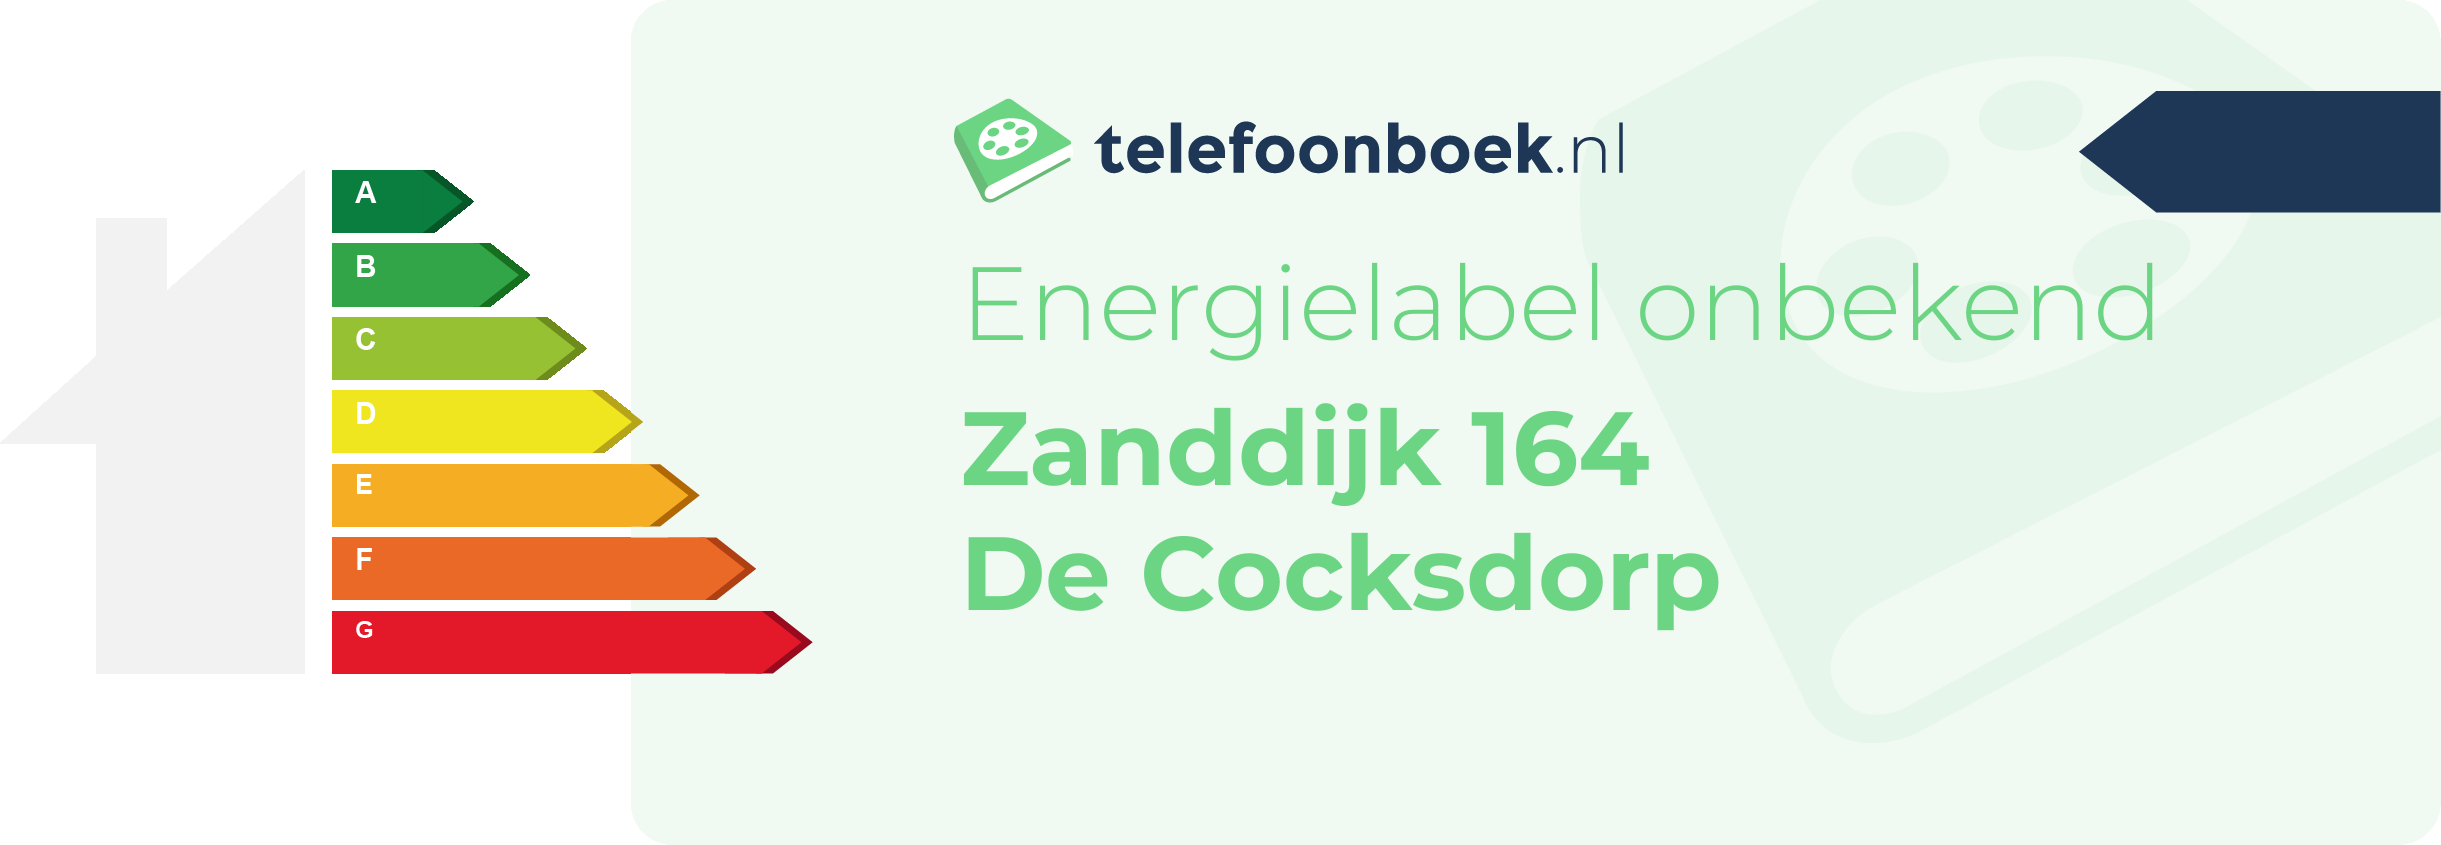 Energielabel Zanddijk 164 De Cocksdorp